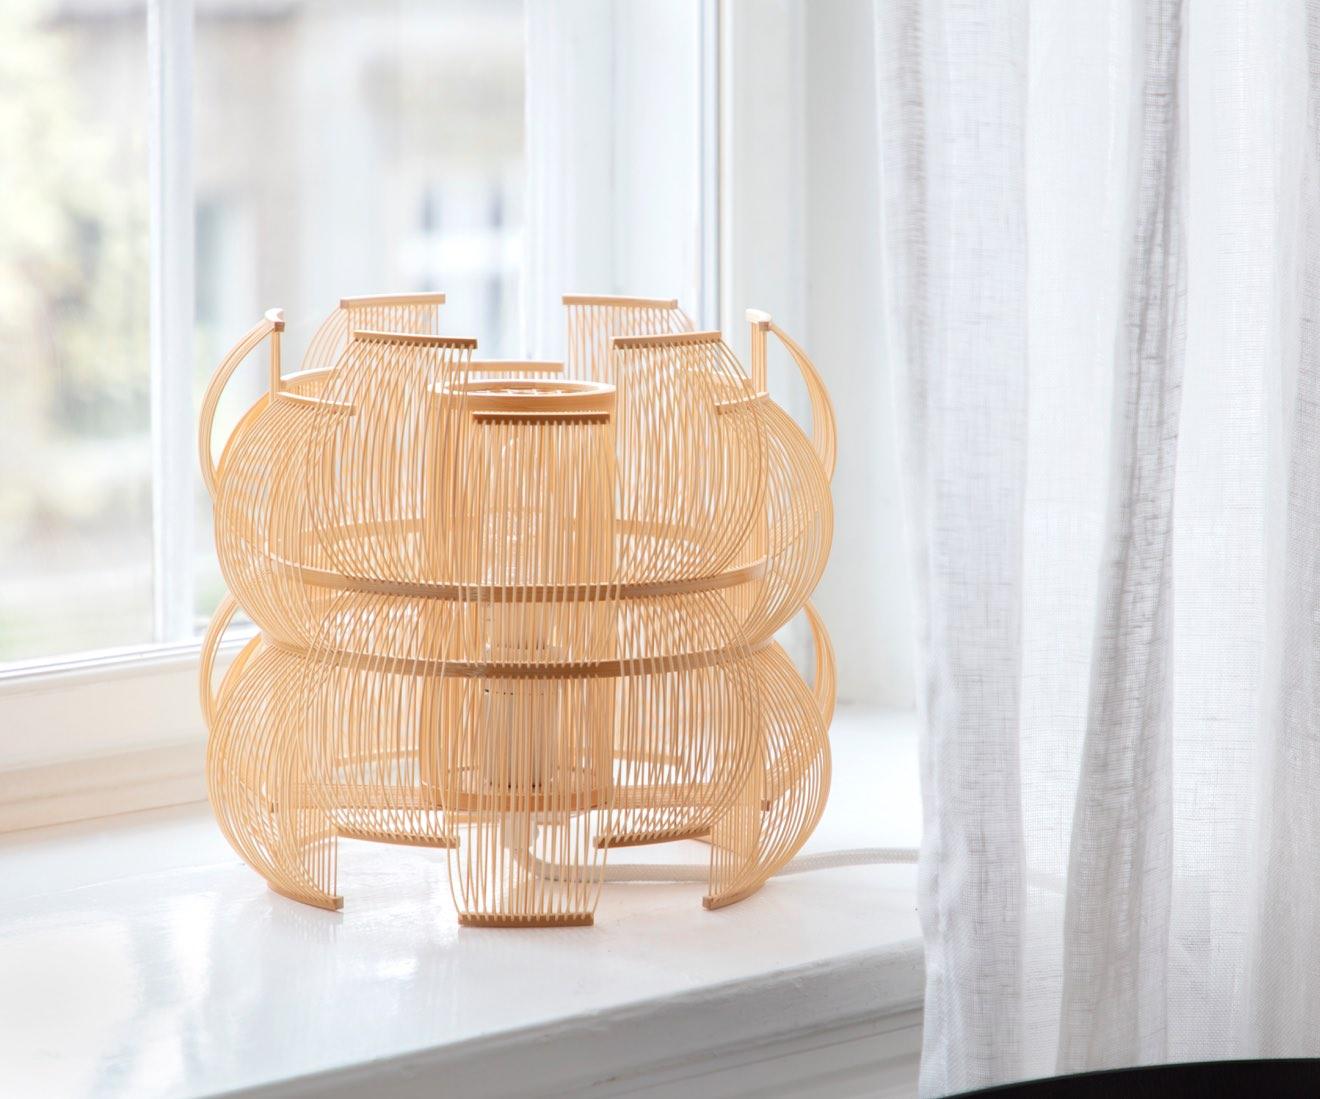 La lampe de table SEN est une œuvre d'art lumineuse unique et contemporaine qui s'appuie sur la tradition tout en revitalisant l'artisanat japonais traditionnel.  Également disponible sous forme de pendentif.

Sen signifie lignes en japonais et les